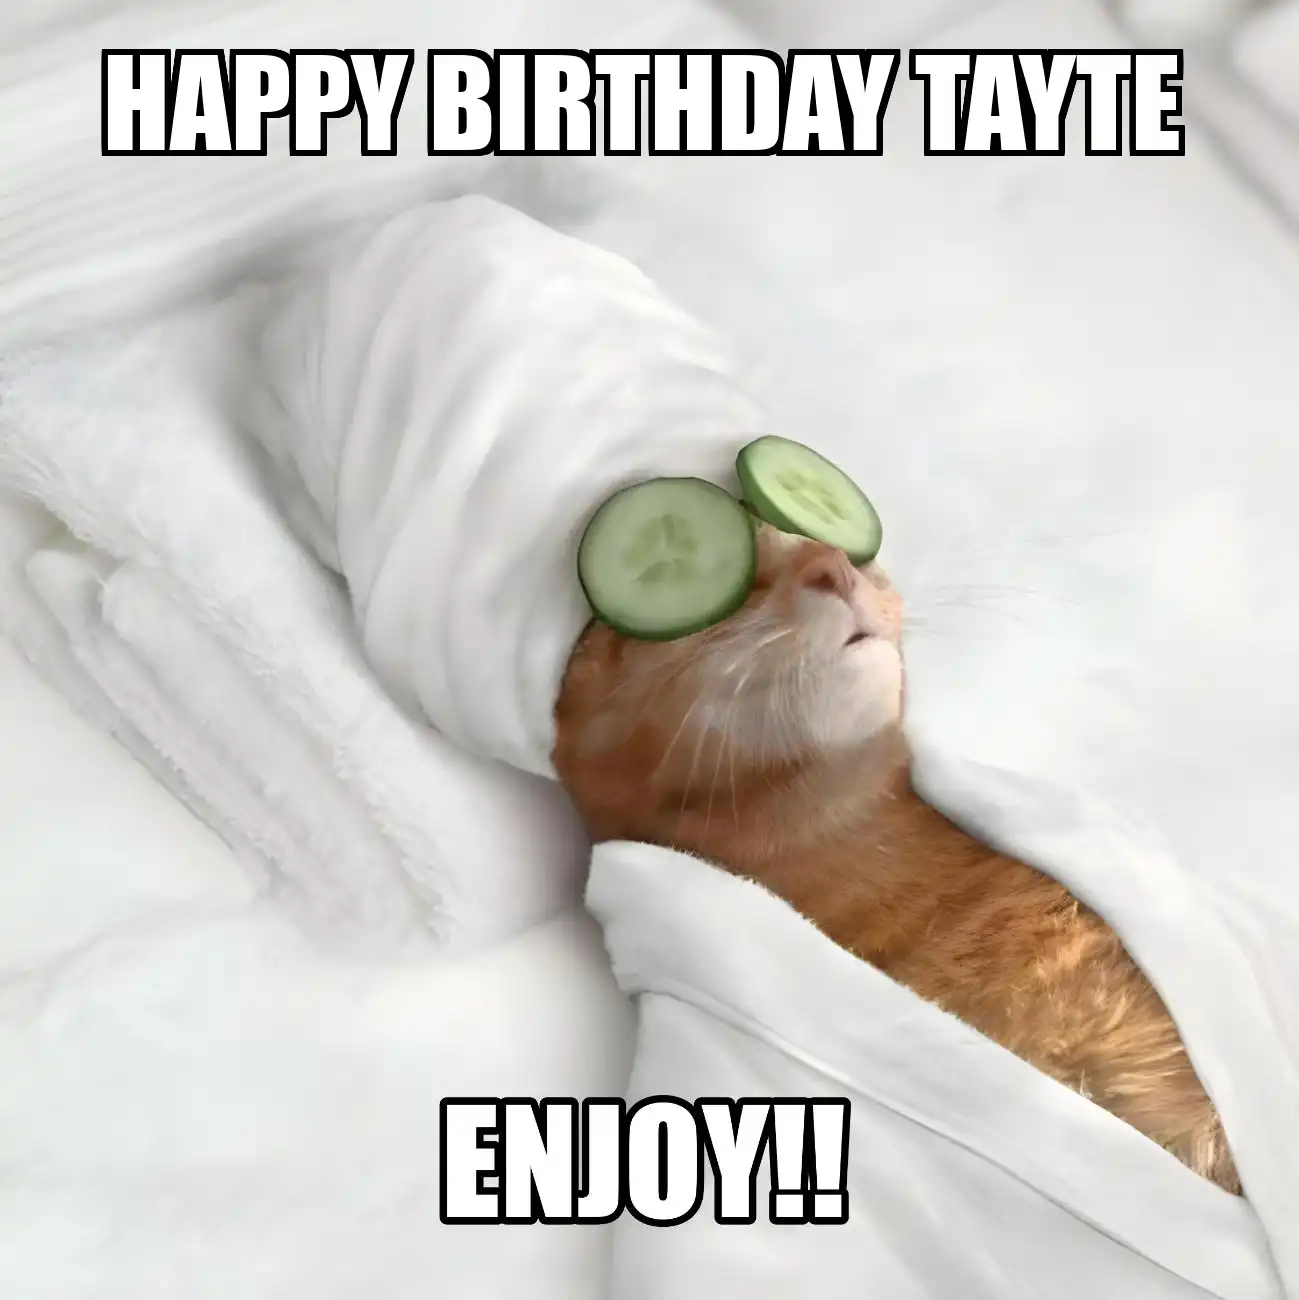 Happy Birthday Tayte Enjoy Cat Meme